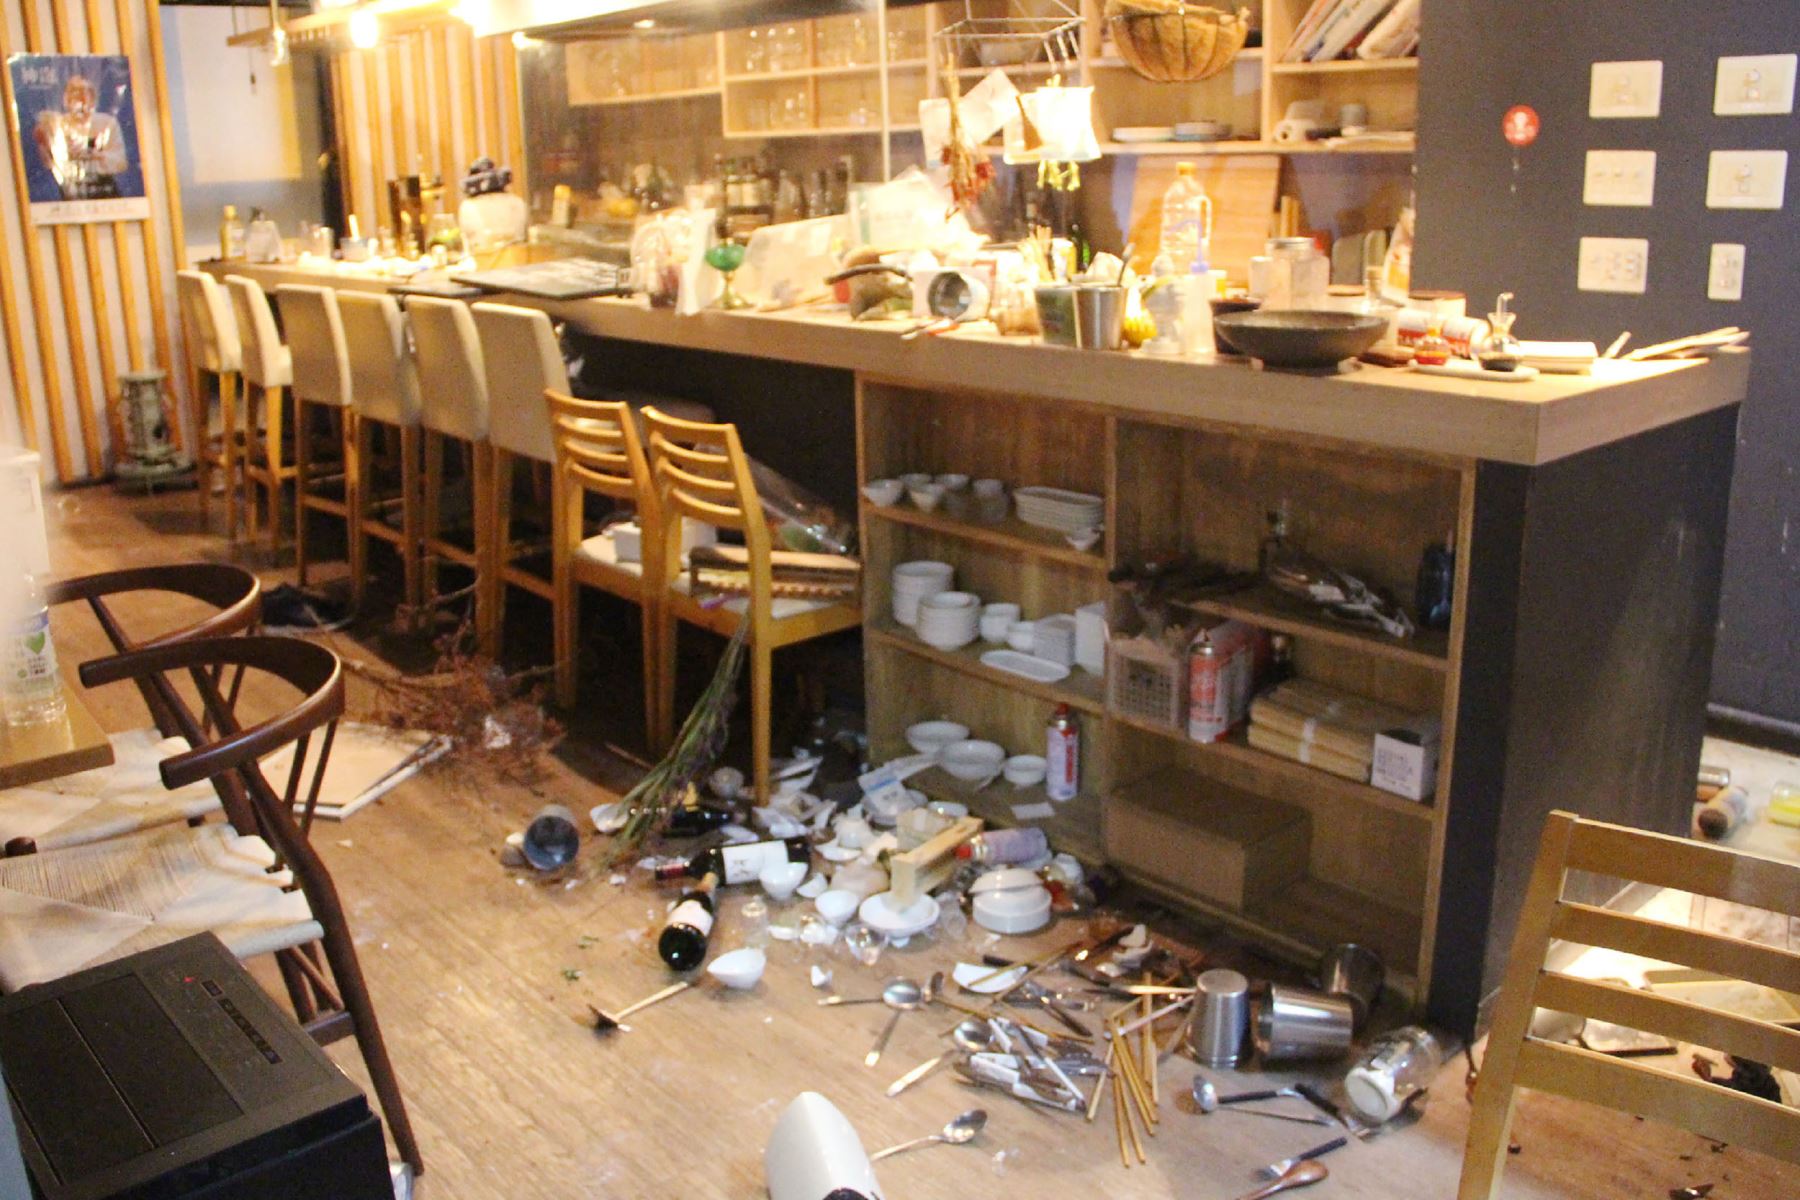 Una imagen muestra vajilla esparcida por el suelo en un restaurante después de un terremoto en Fukushima.
Foto: AFP